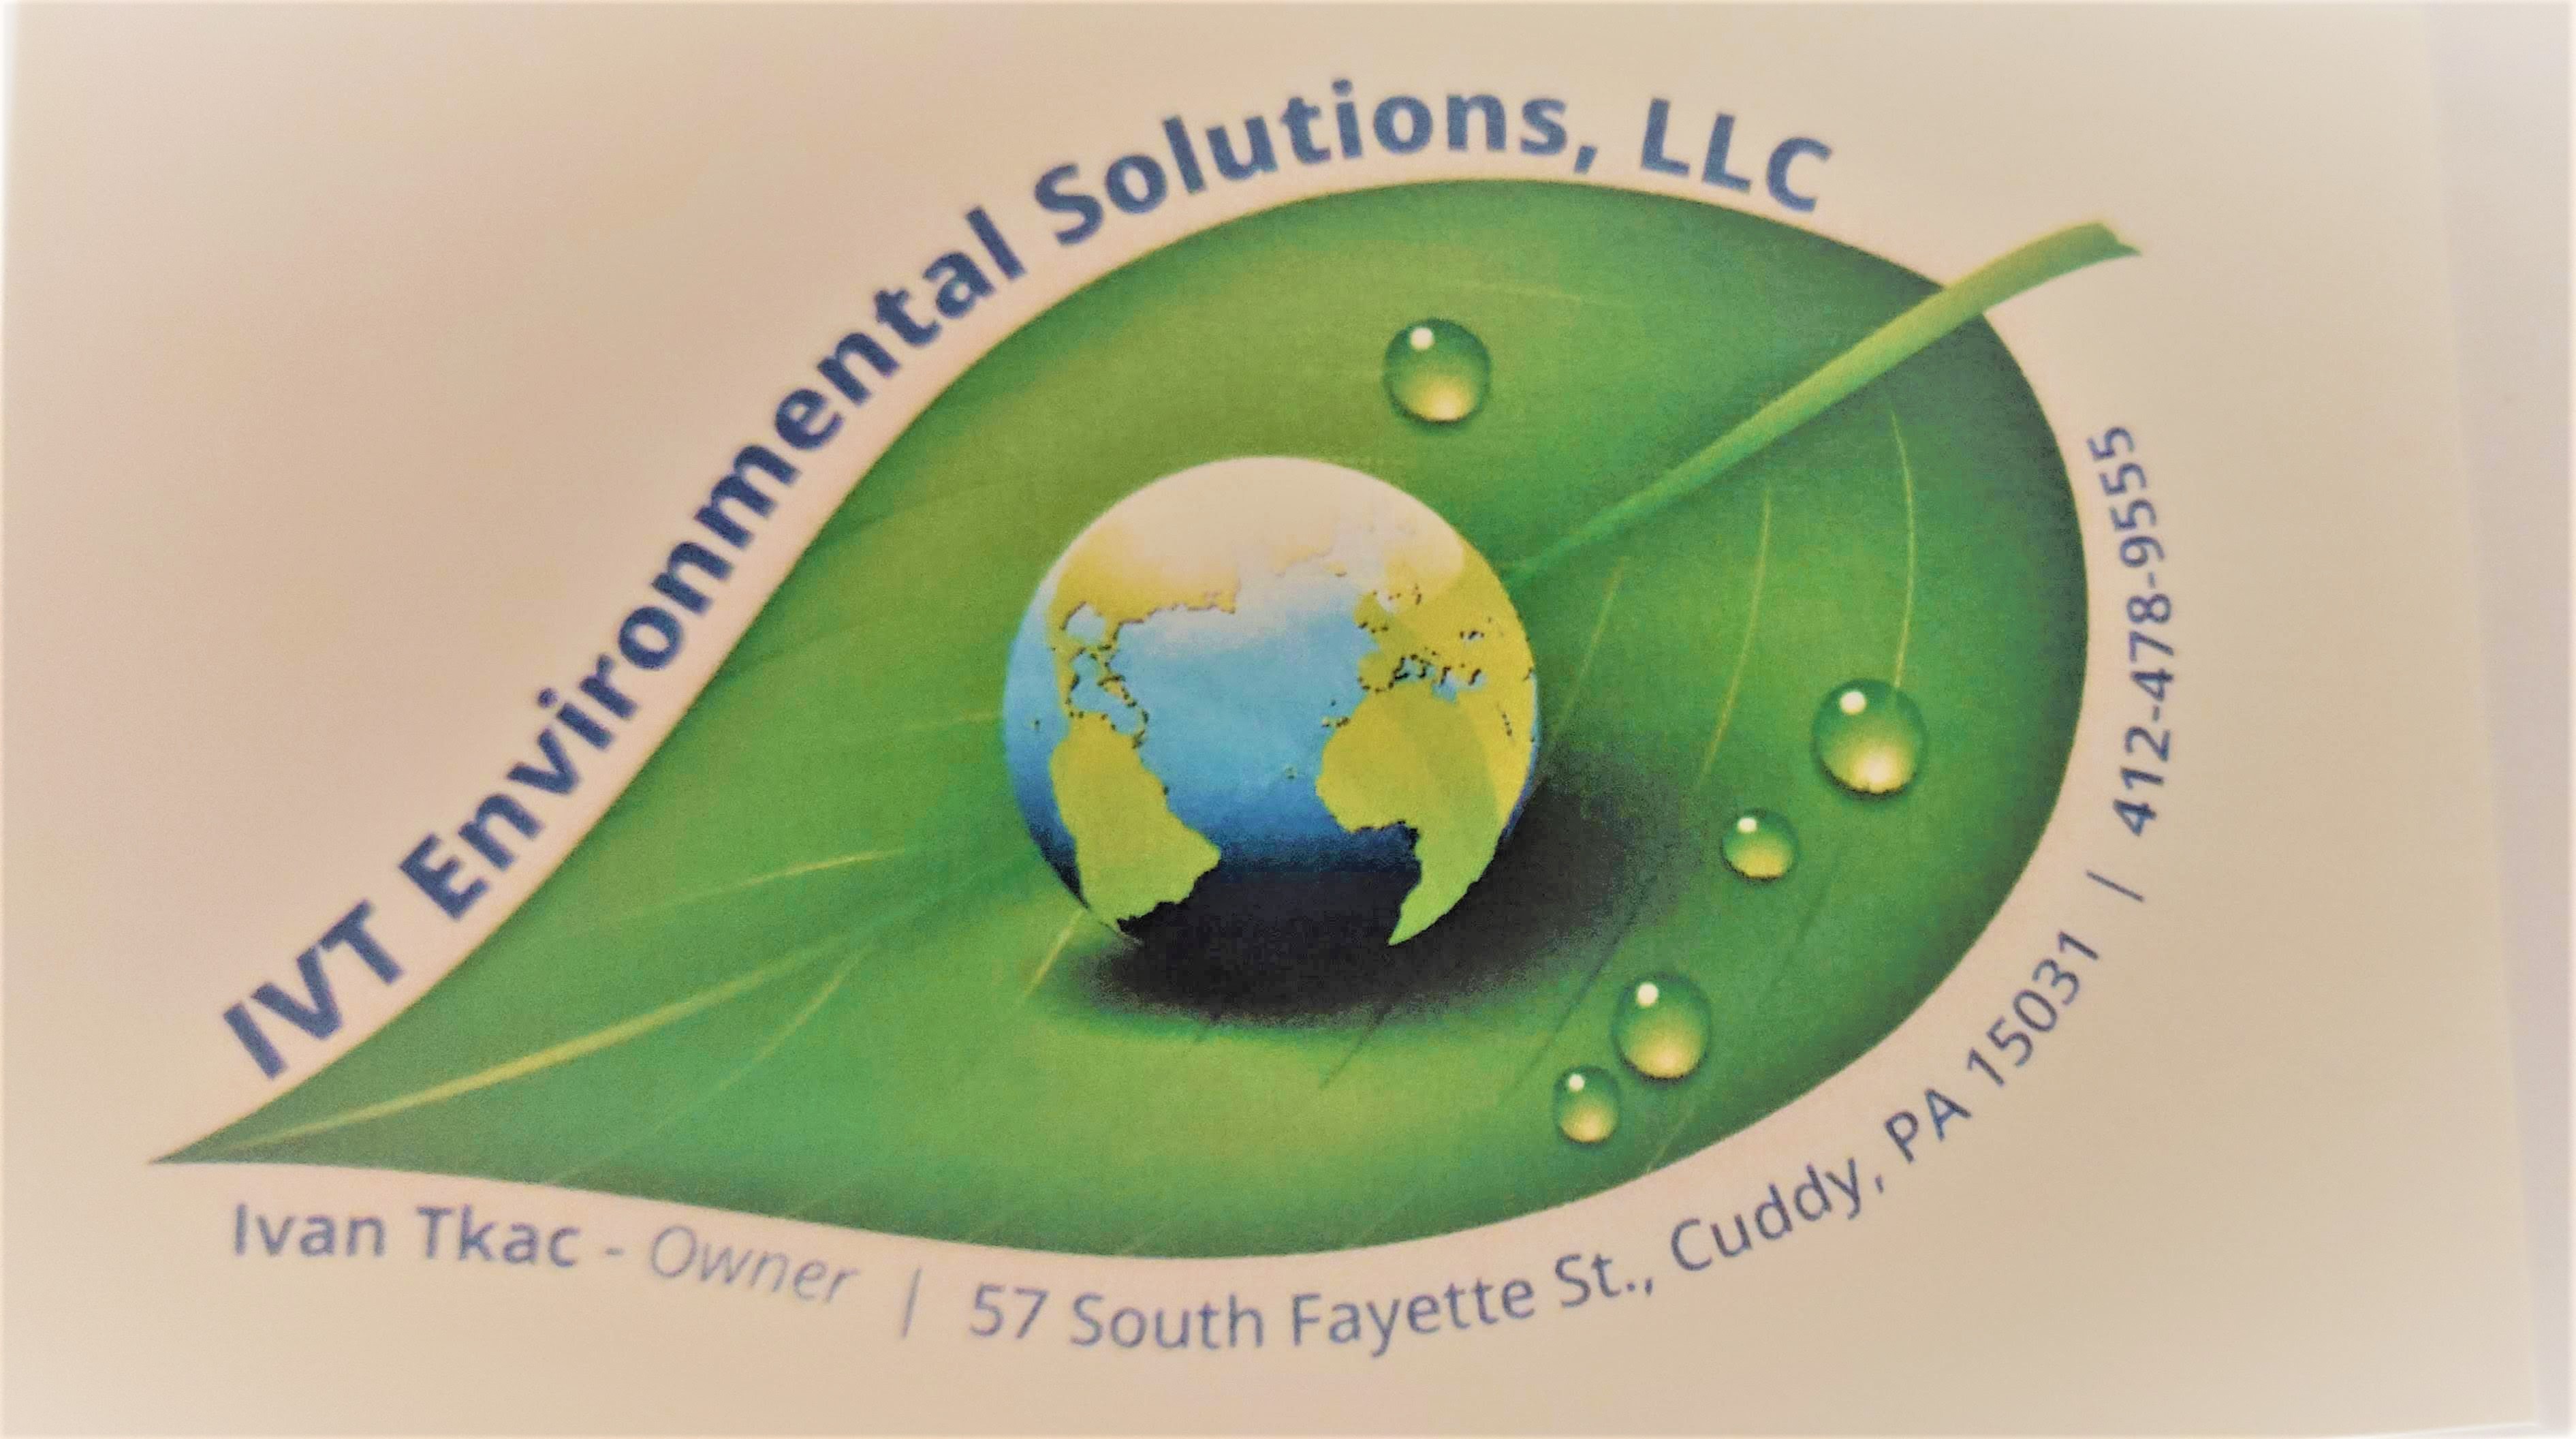 IVT Environmental Solutions, LLC Logo